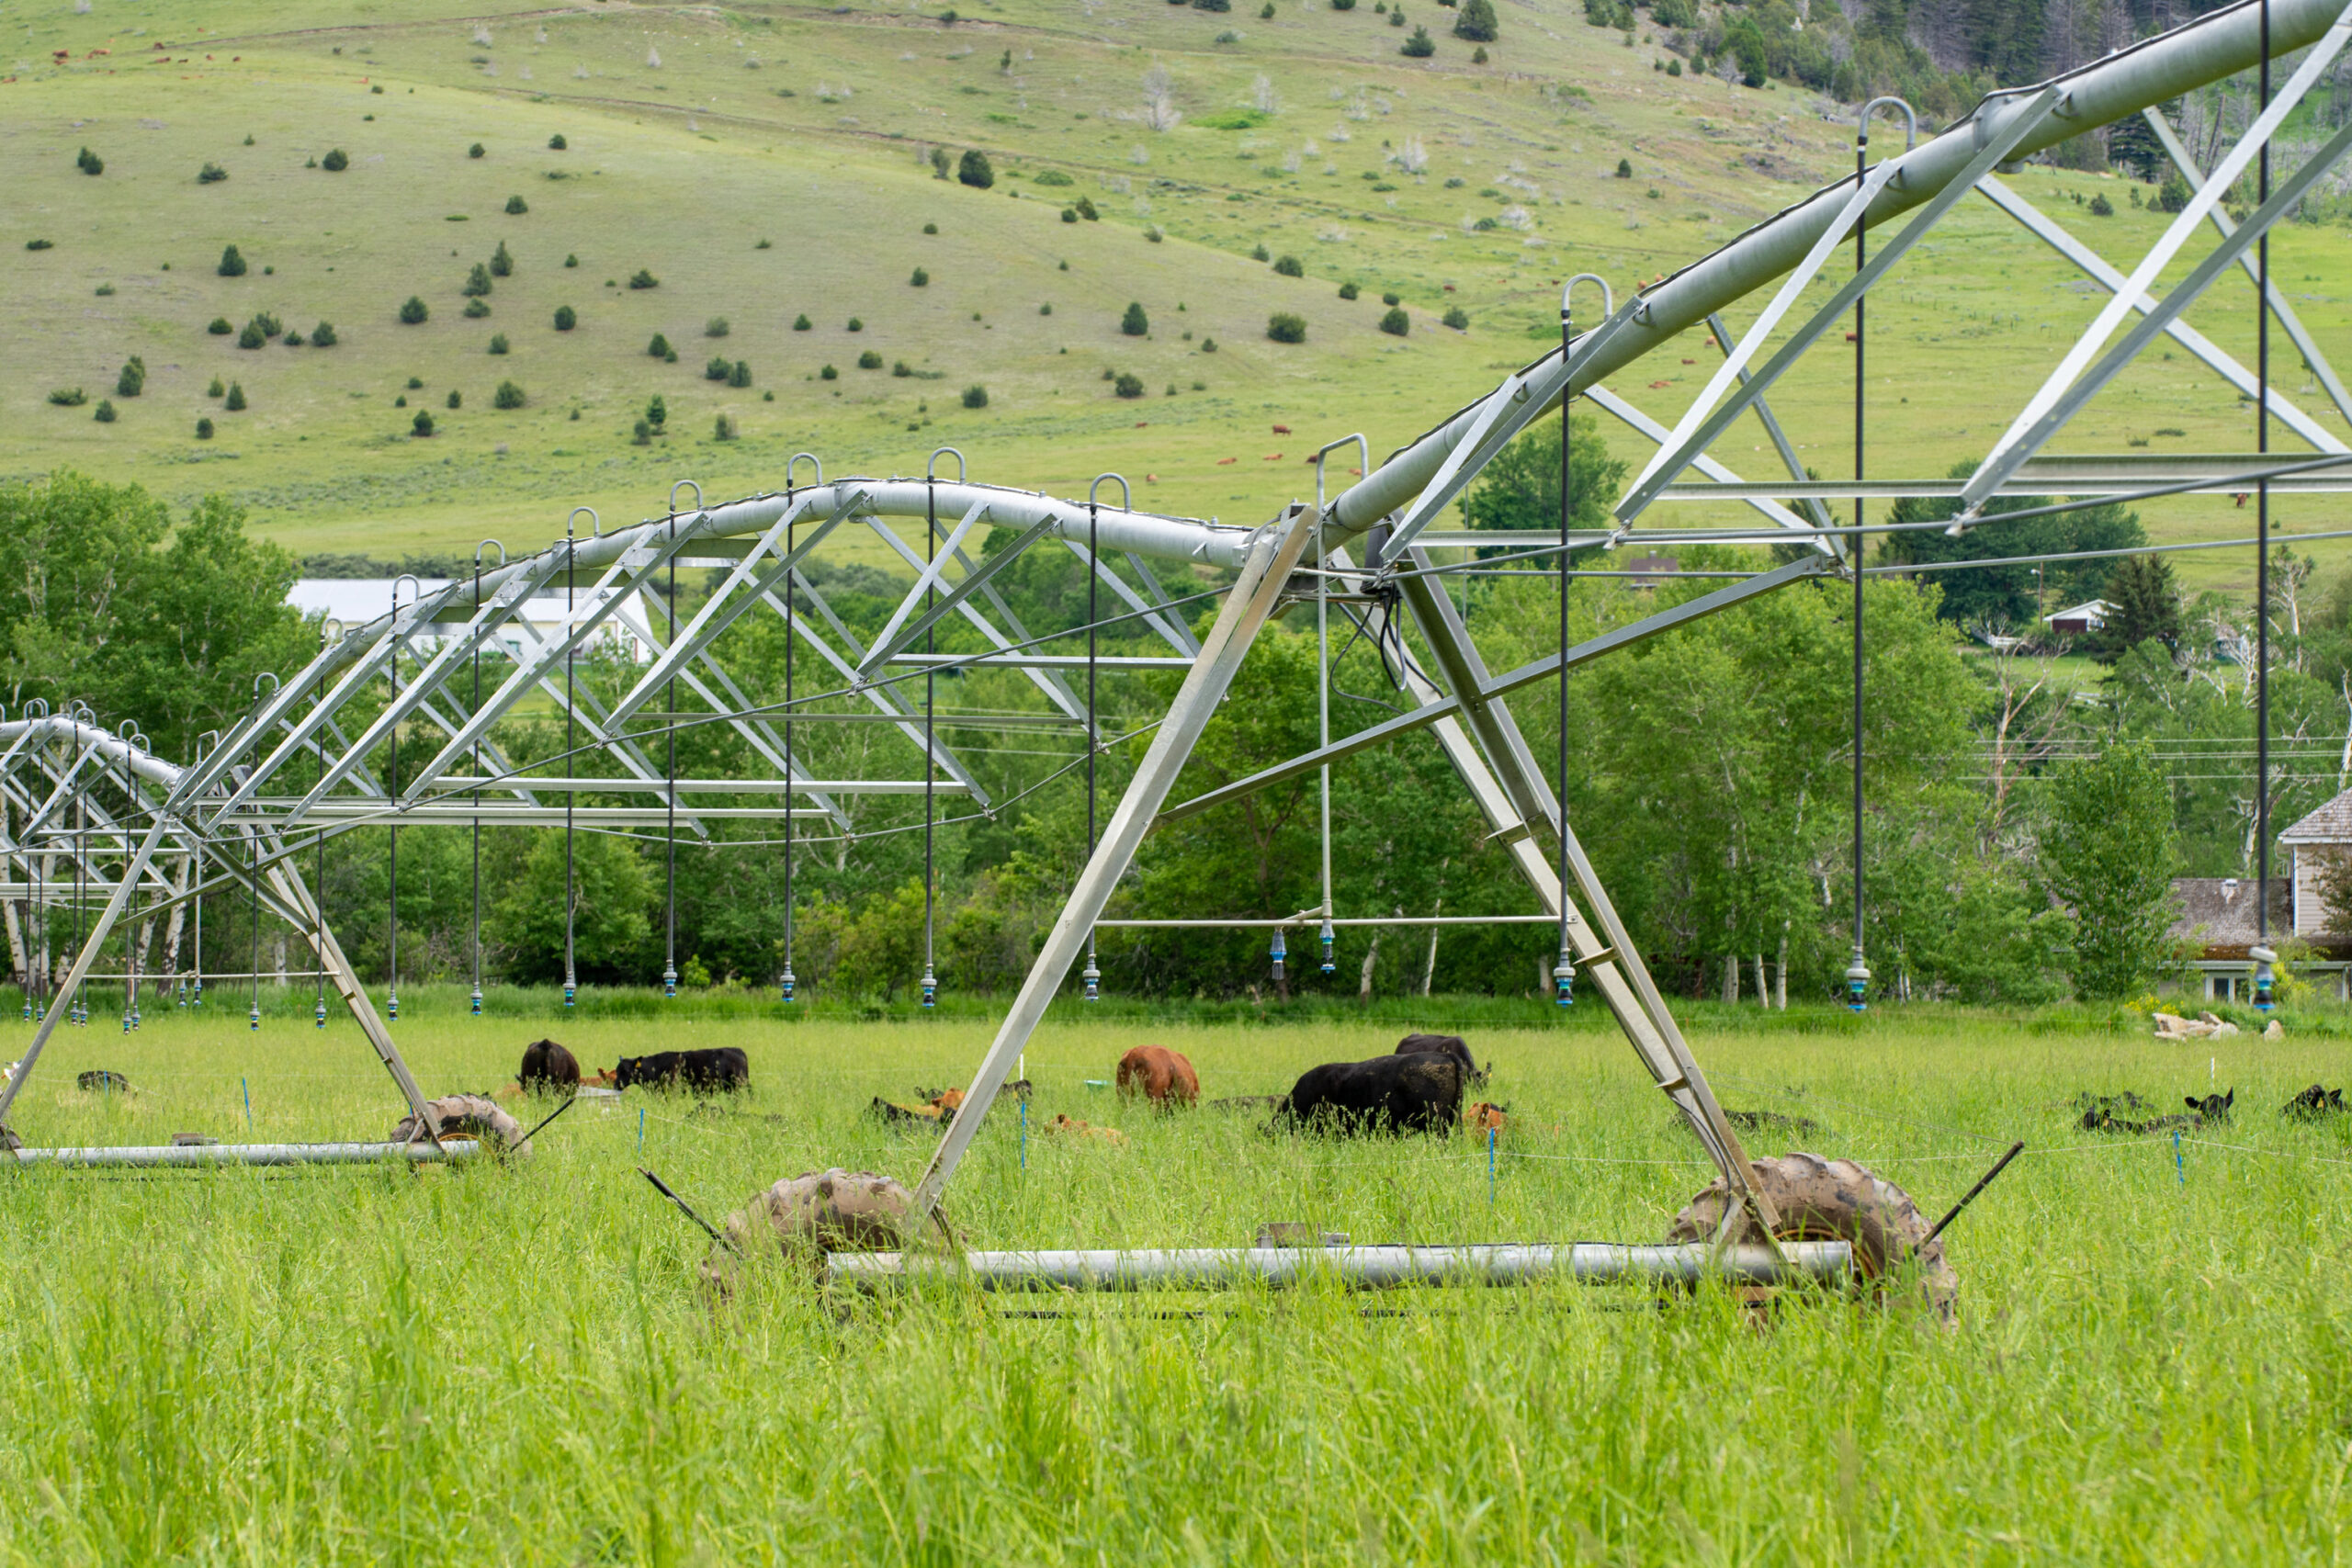 Cattle grazing under irrigation